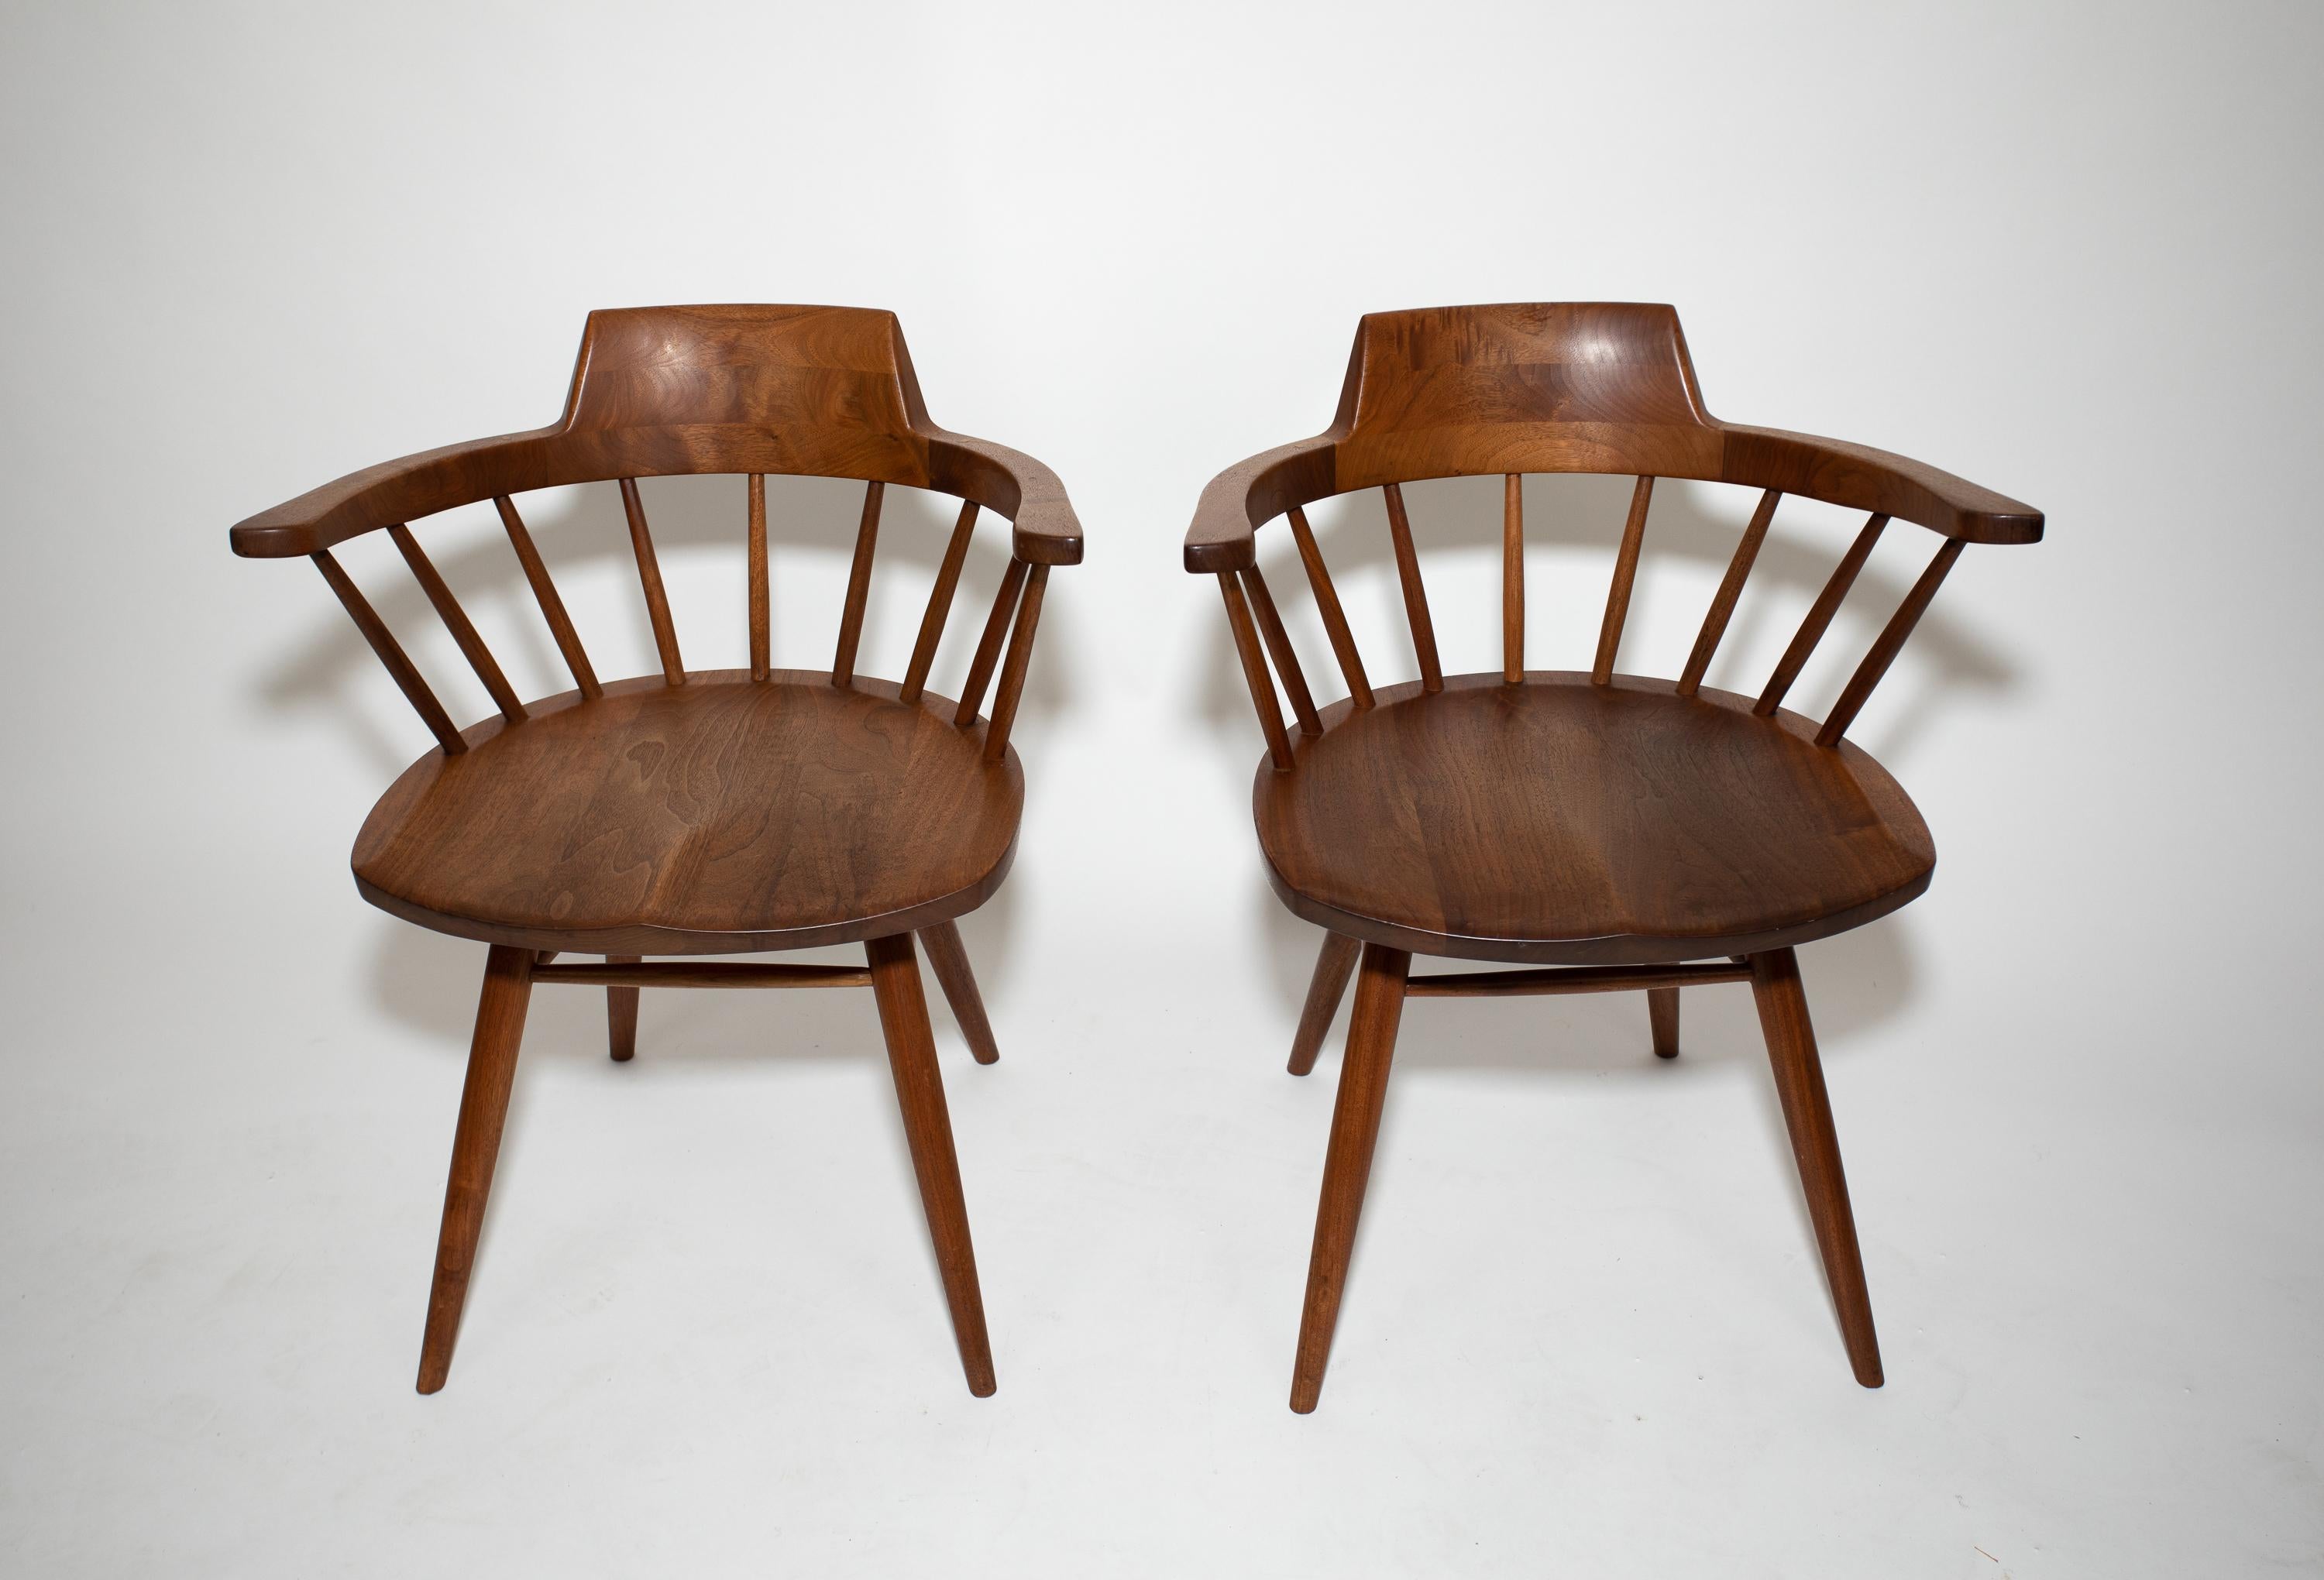 Une paire de chaises George Nakashima.
Belle finition d'origine.
Le nom original des clients sur le dessous du siège.
Les détails élégants comprennent des cannelures sur le dos et le haut des bras.
Belle sélection de bois.